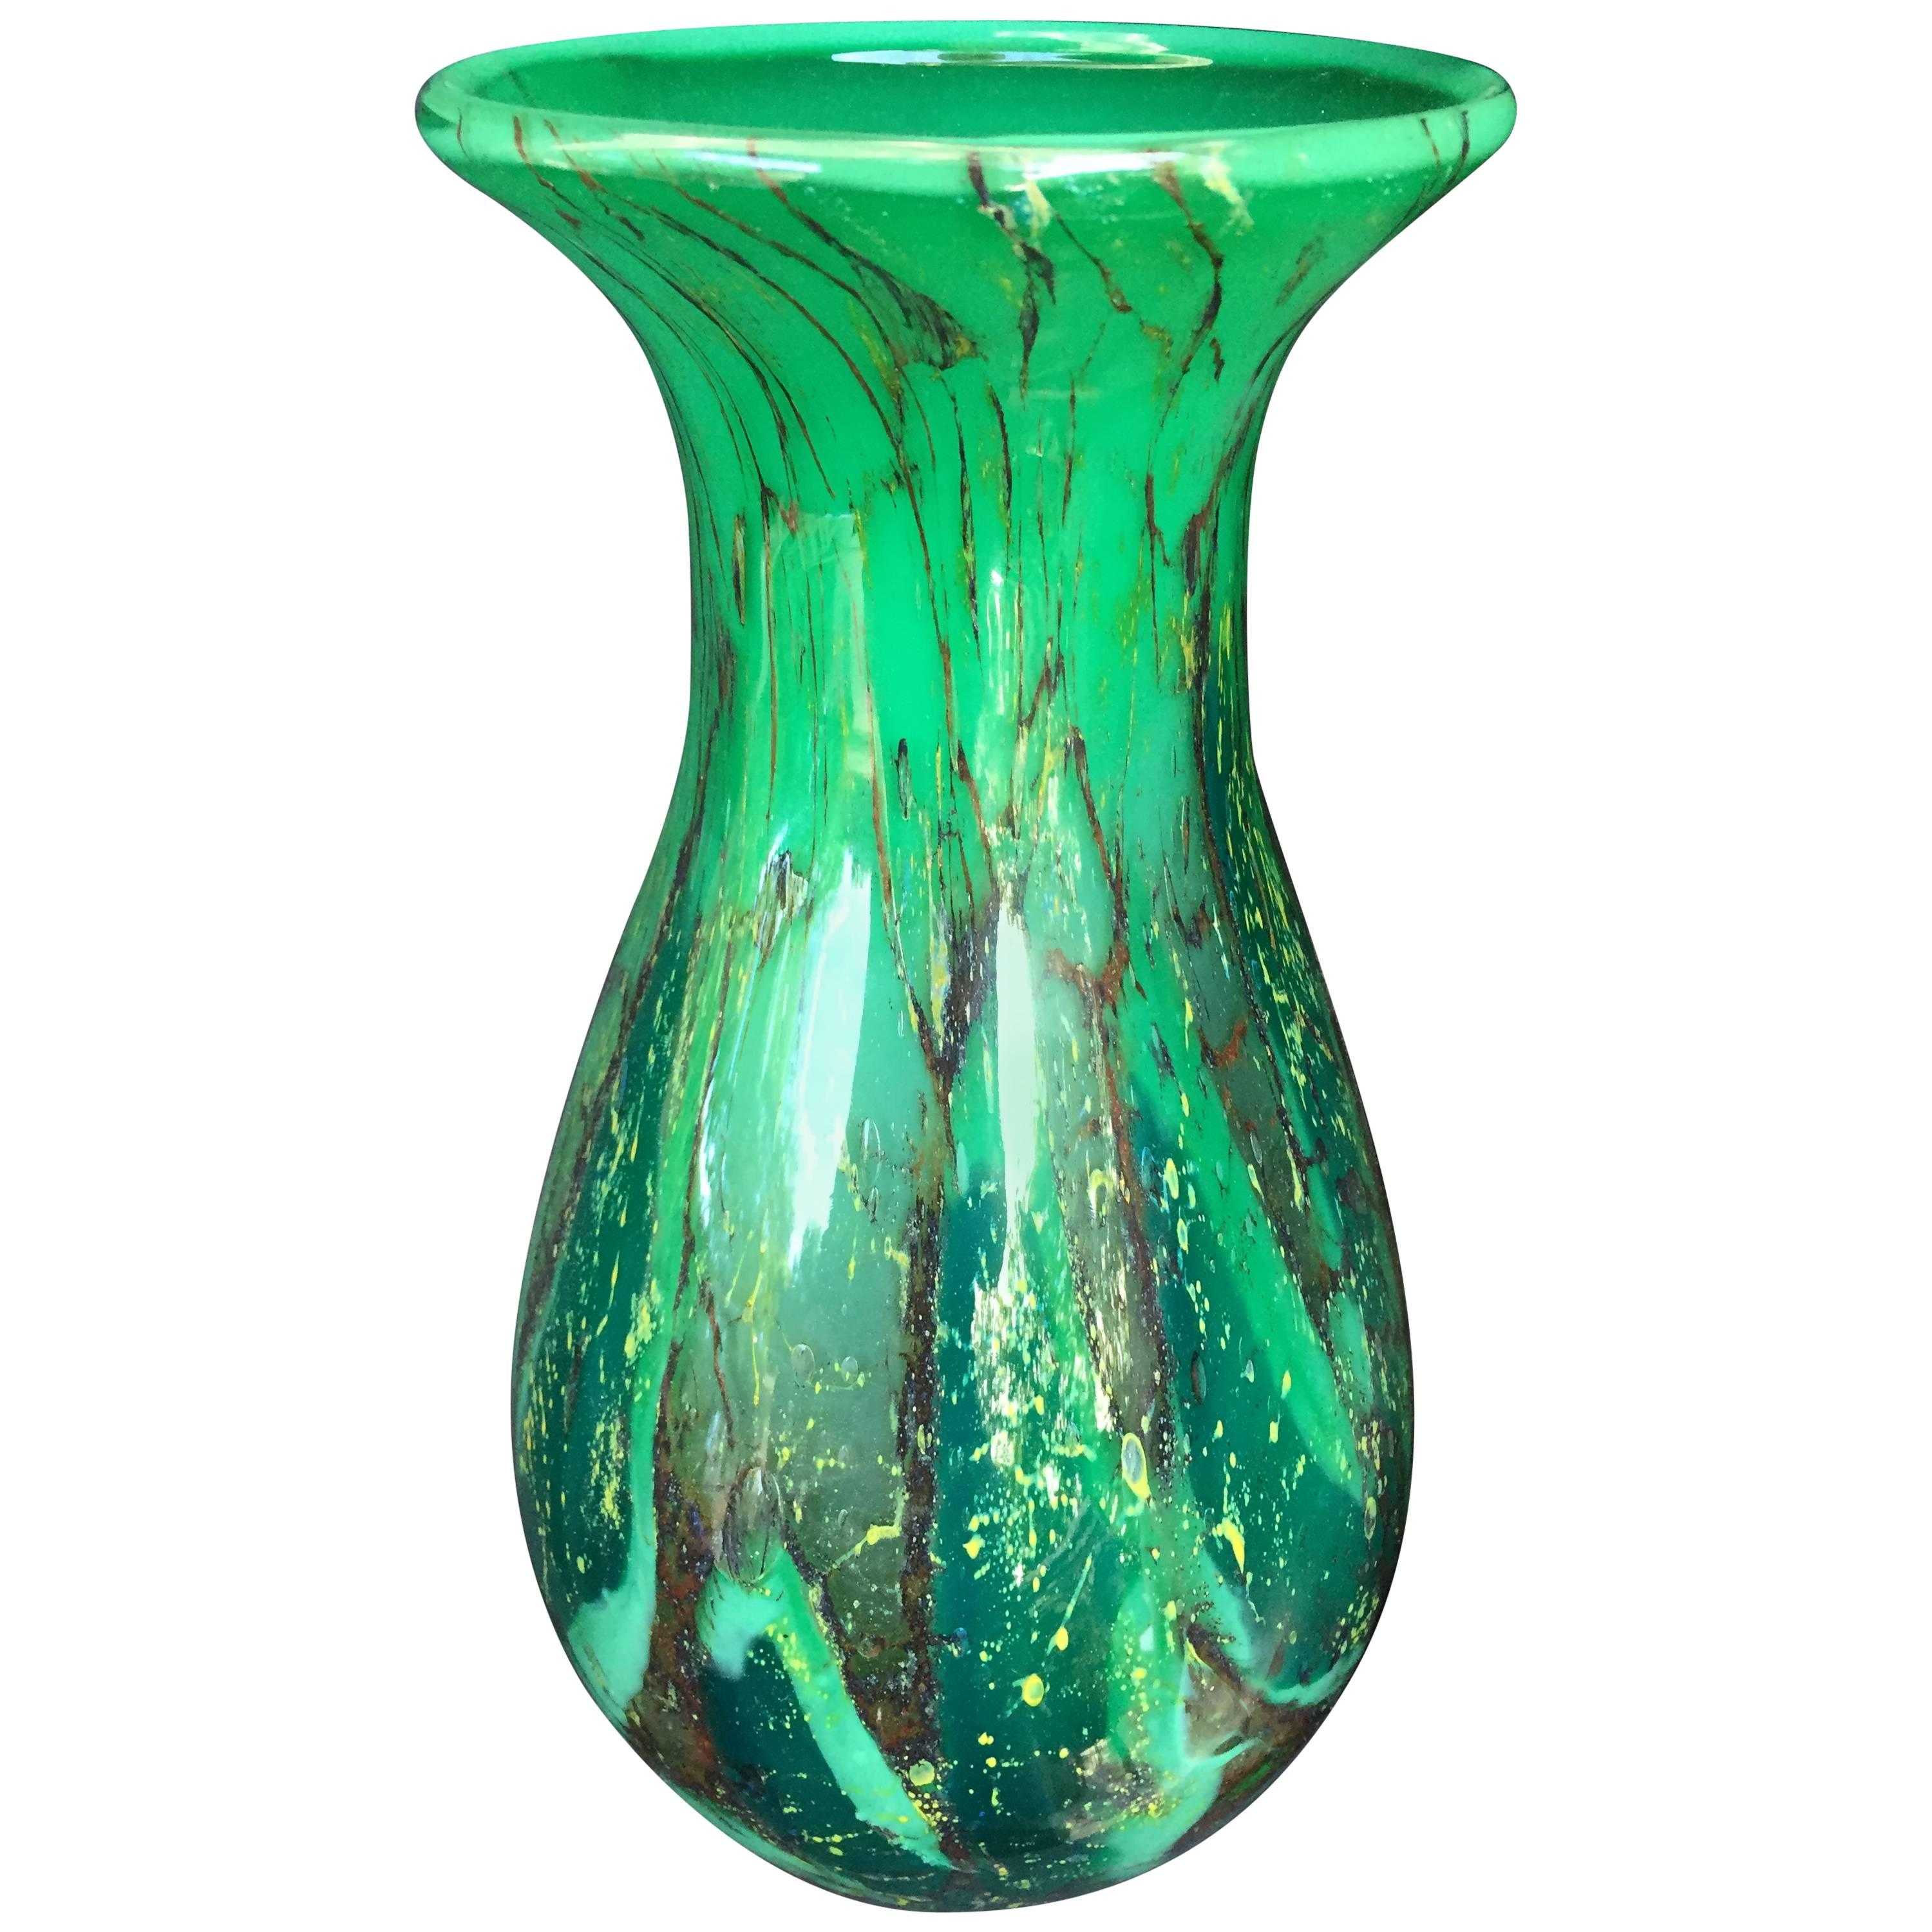 Stunning Hand made Hand blown Glass Vase Rich Green Colors, Karl Wiedmann, 1935 